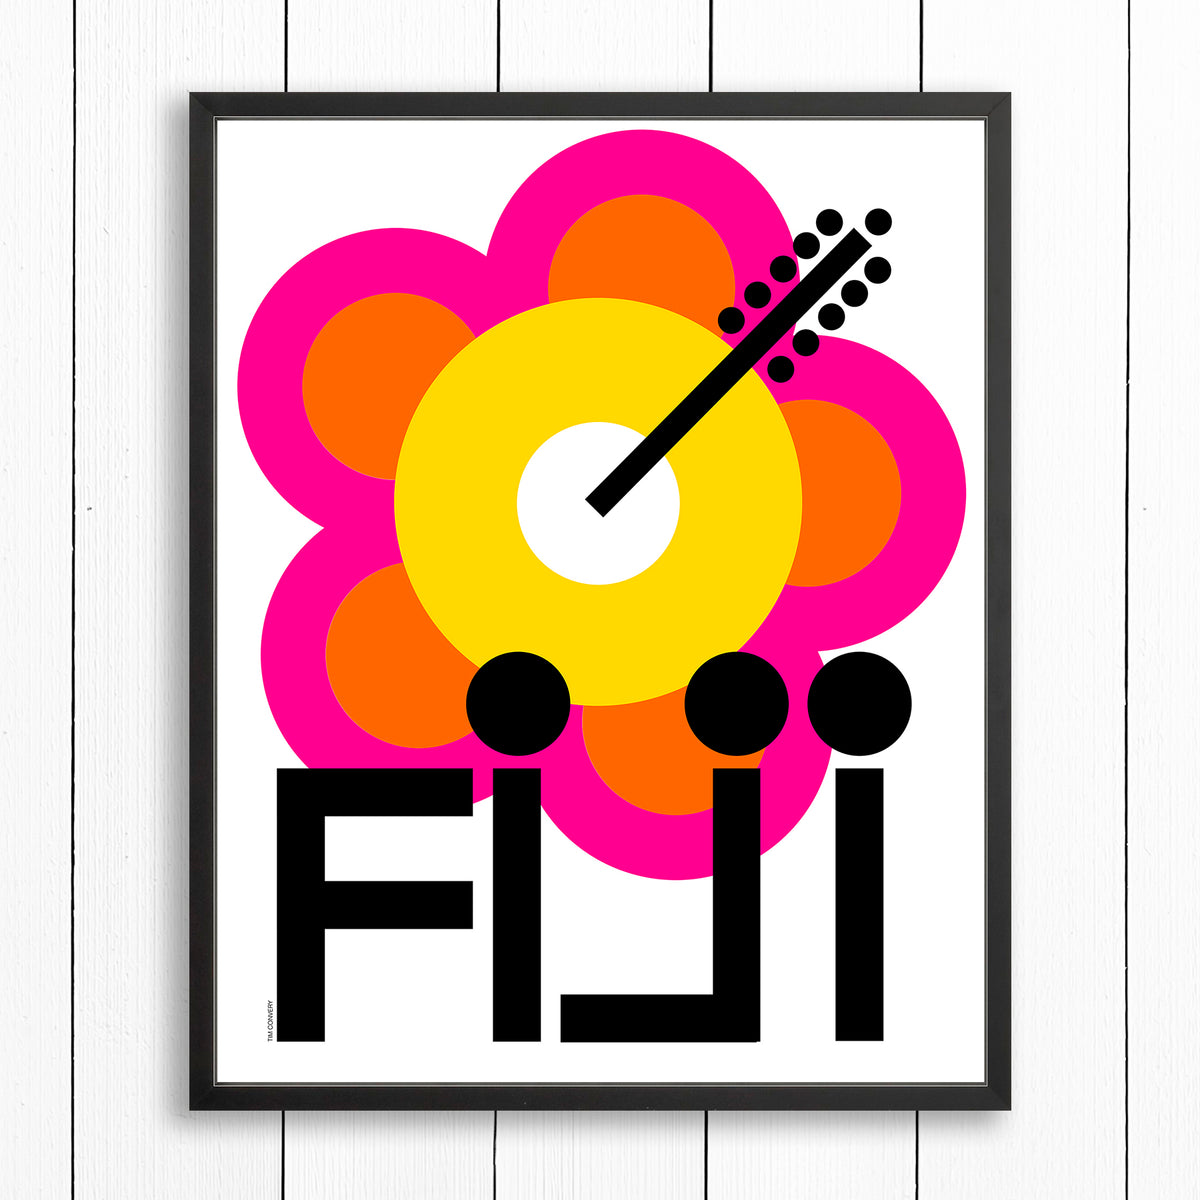 FIJI / PRINT